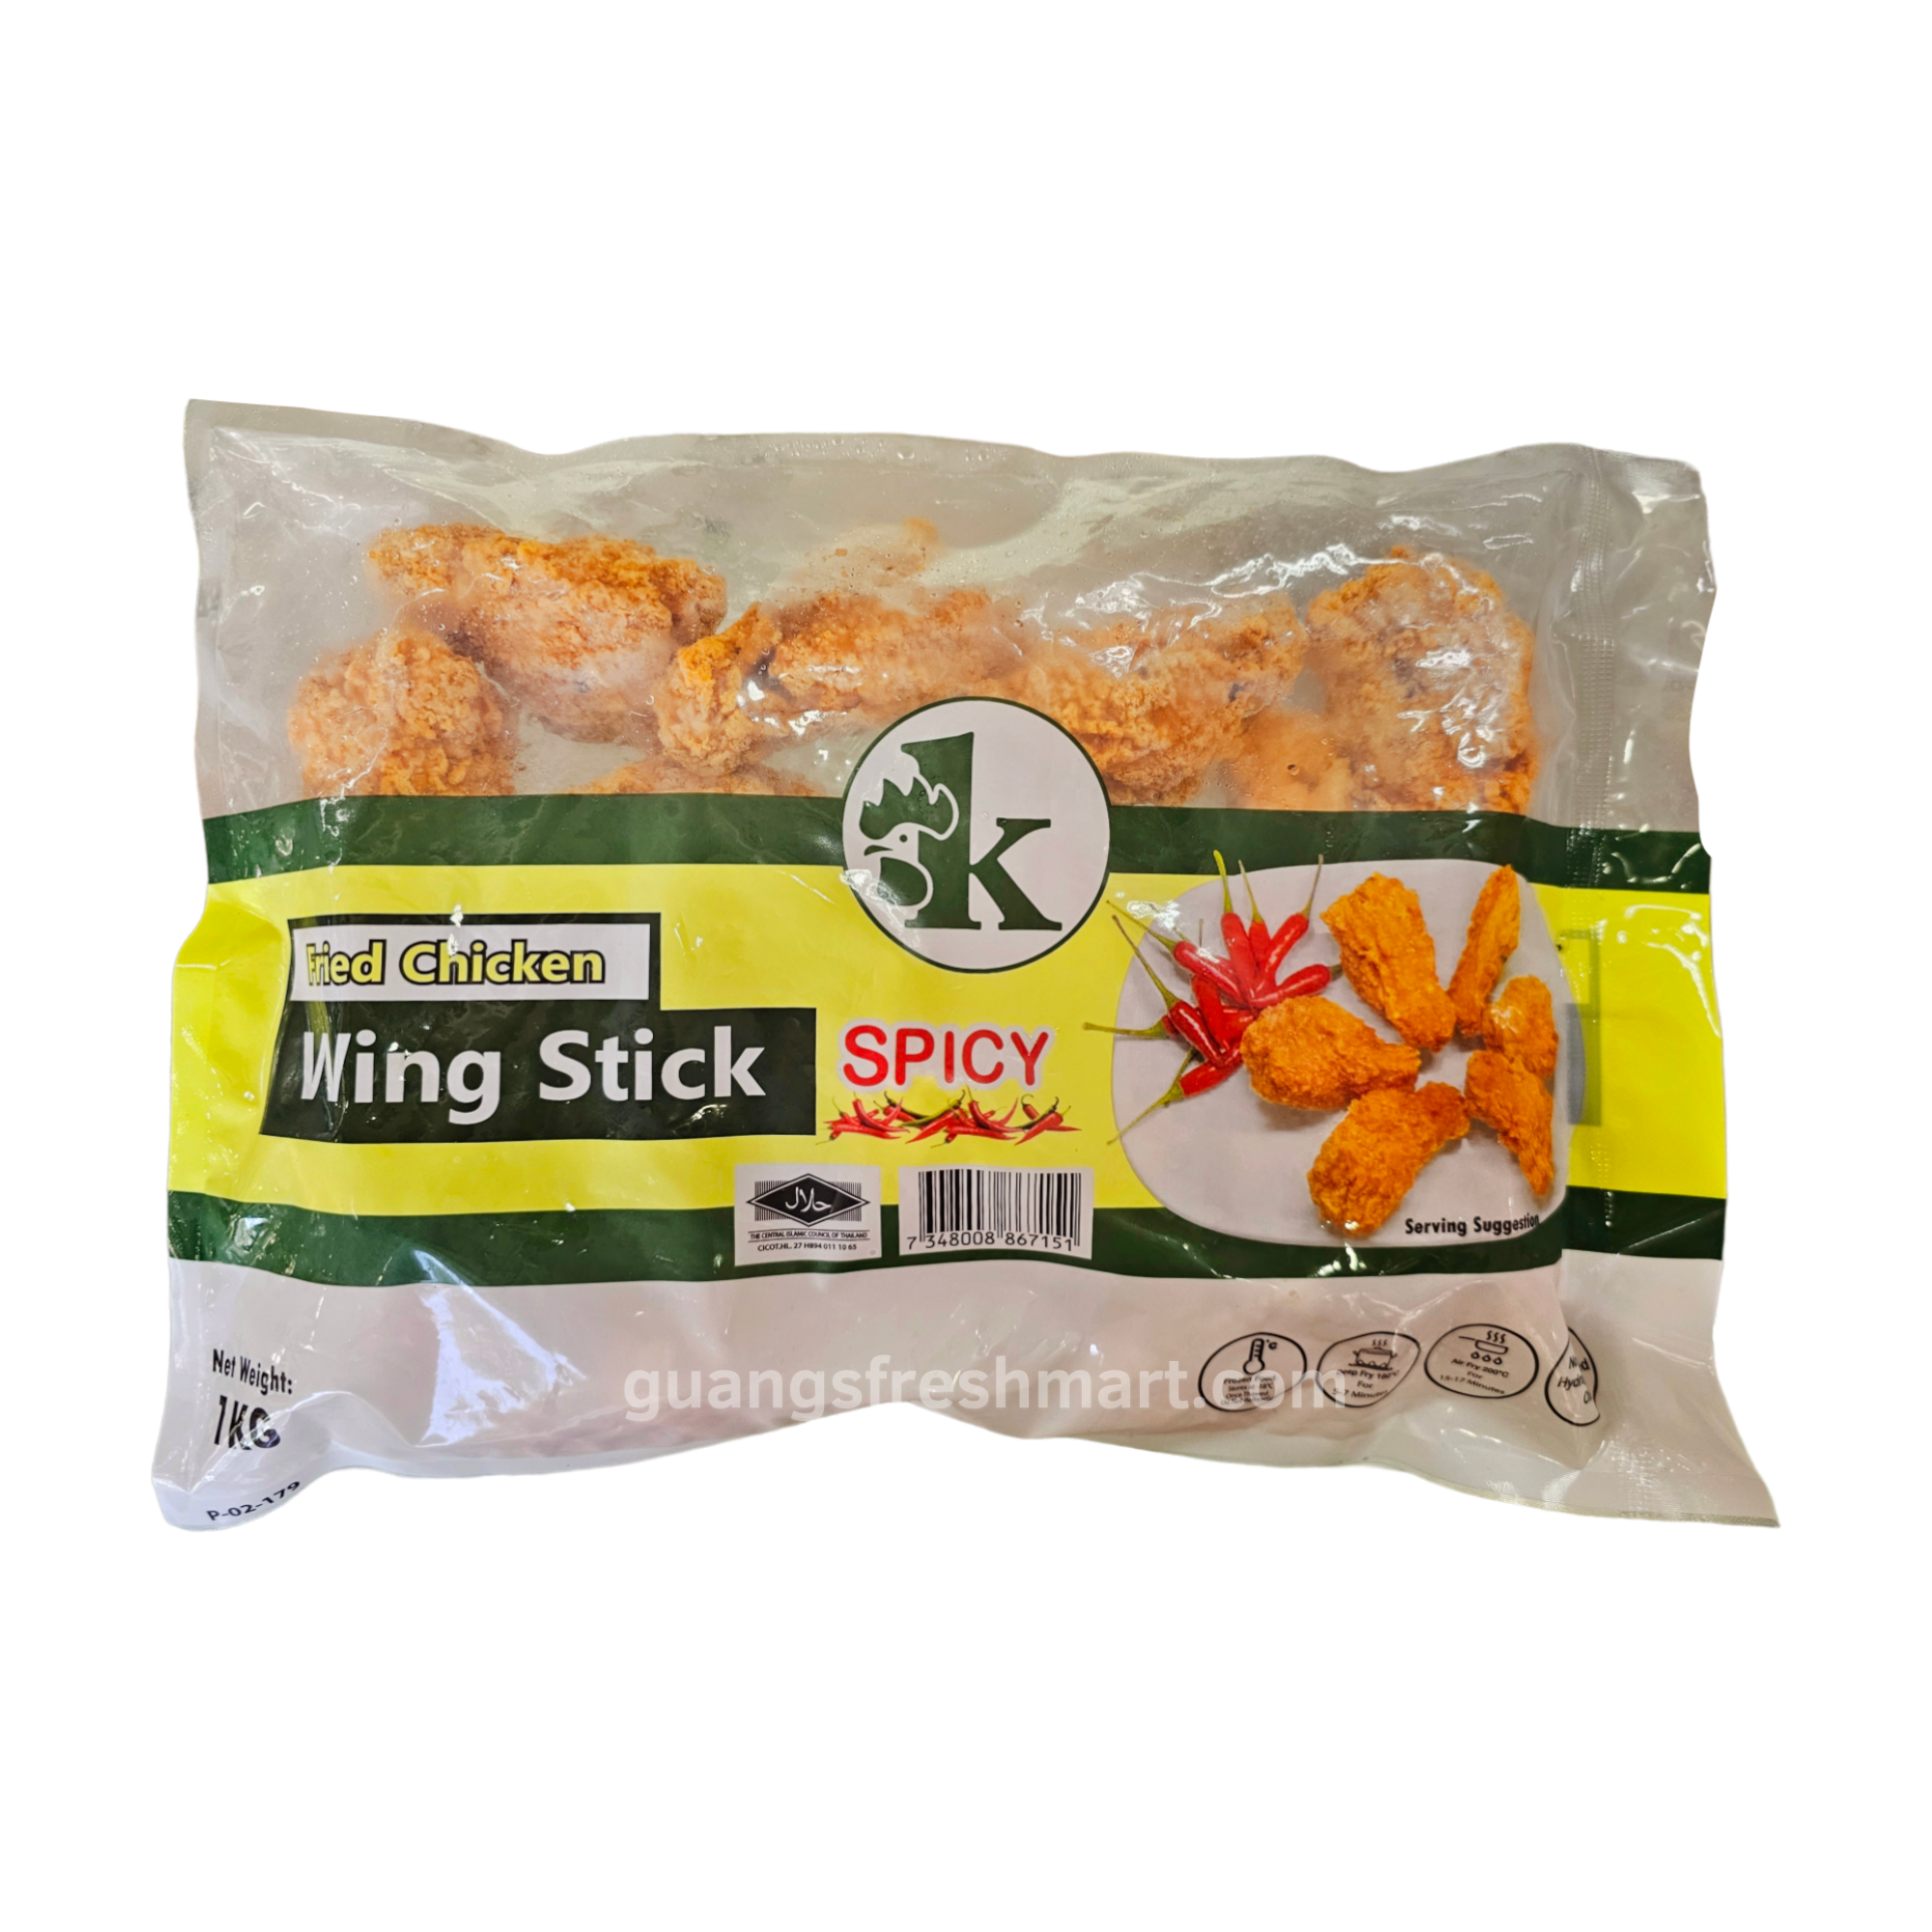 Fried Chicken Wing Stick Spicy (1kg)